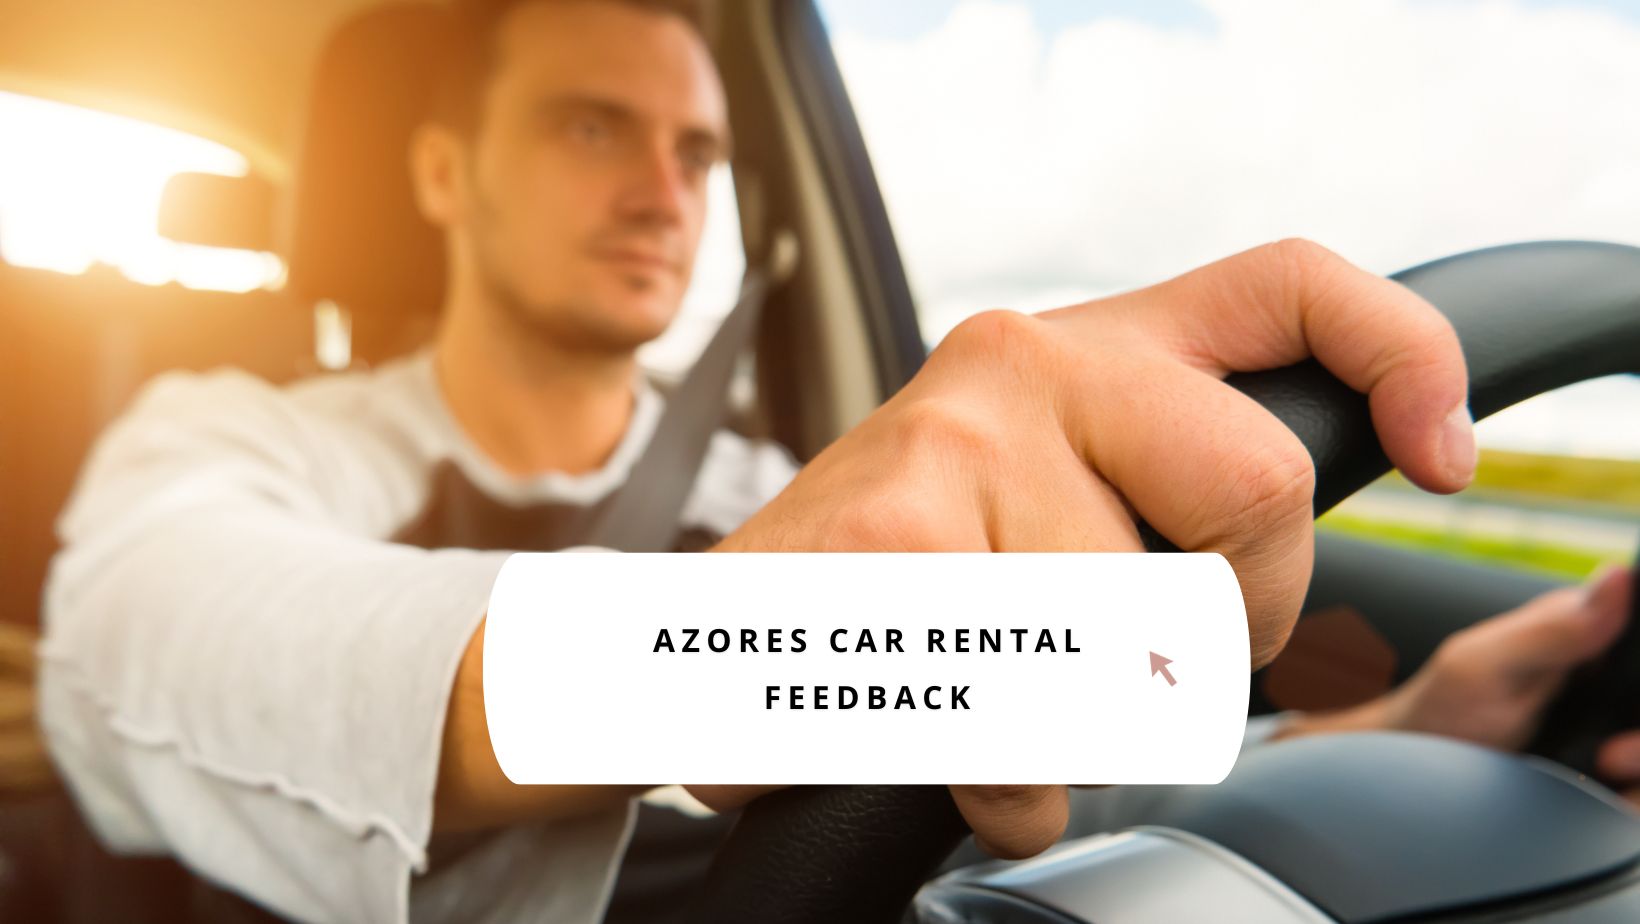 Azores car rental feedback